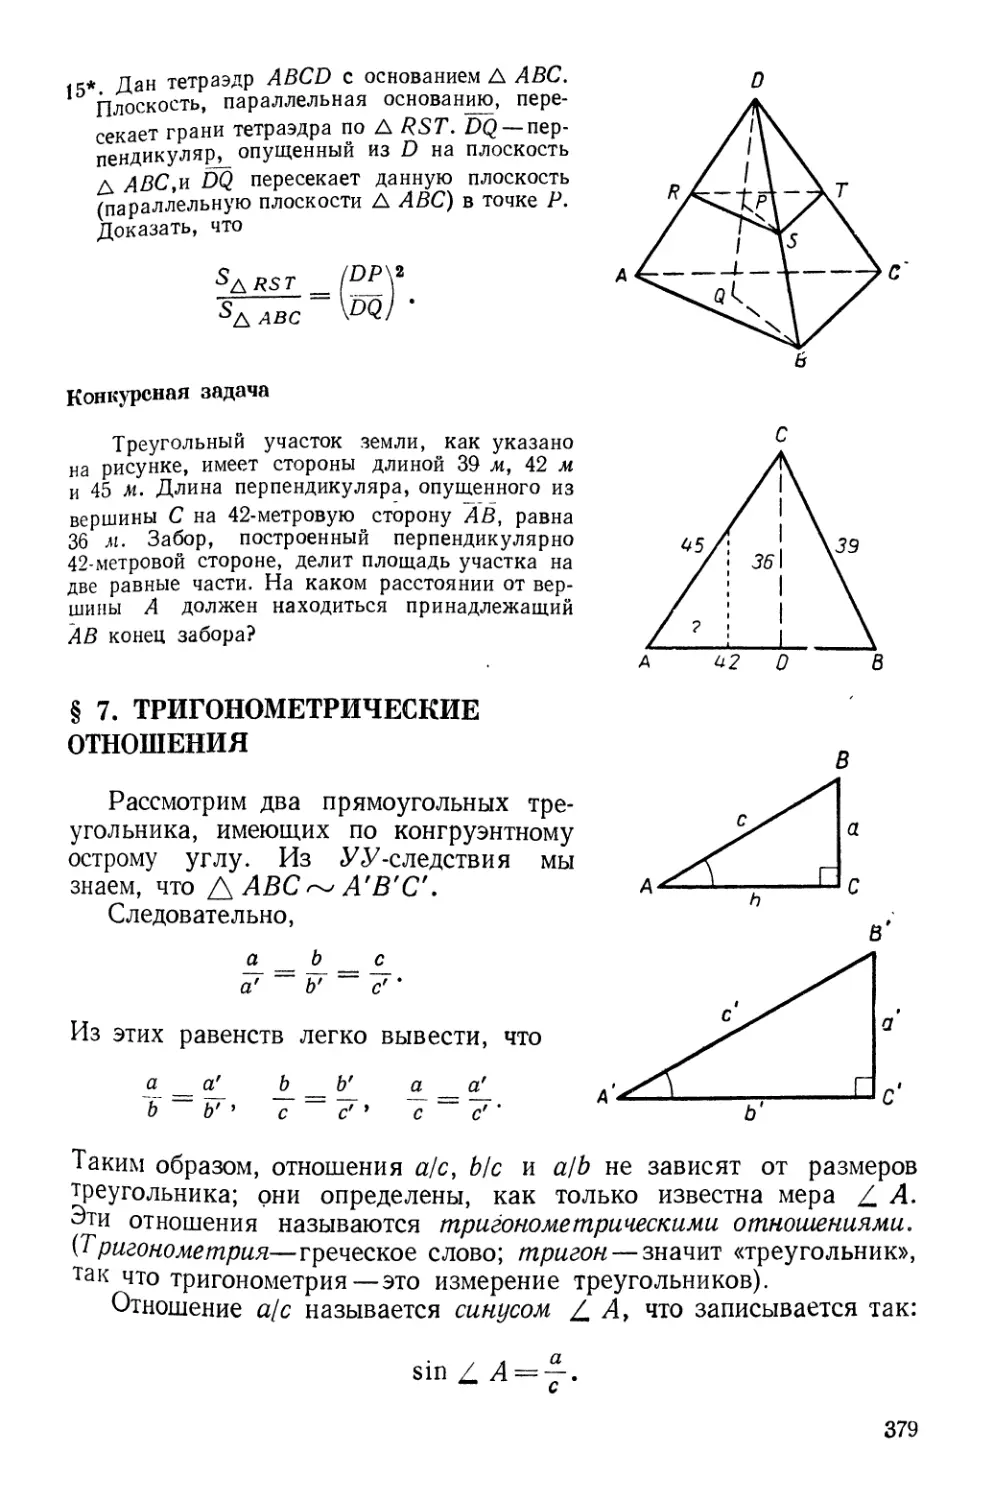 § 7. Тригонометрические отношения